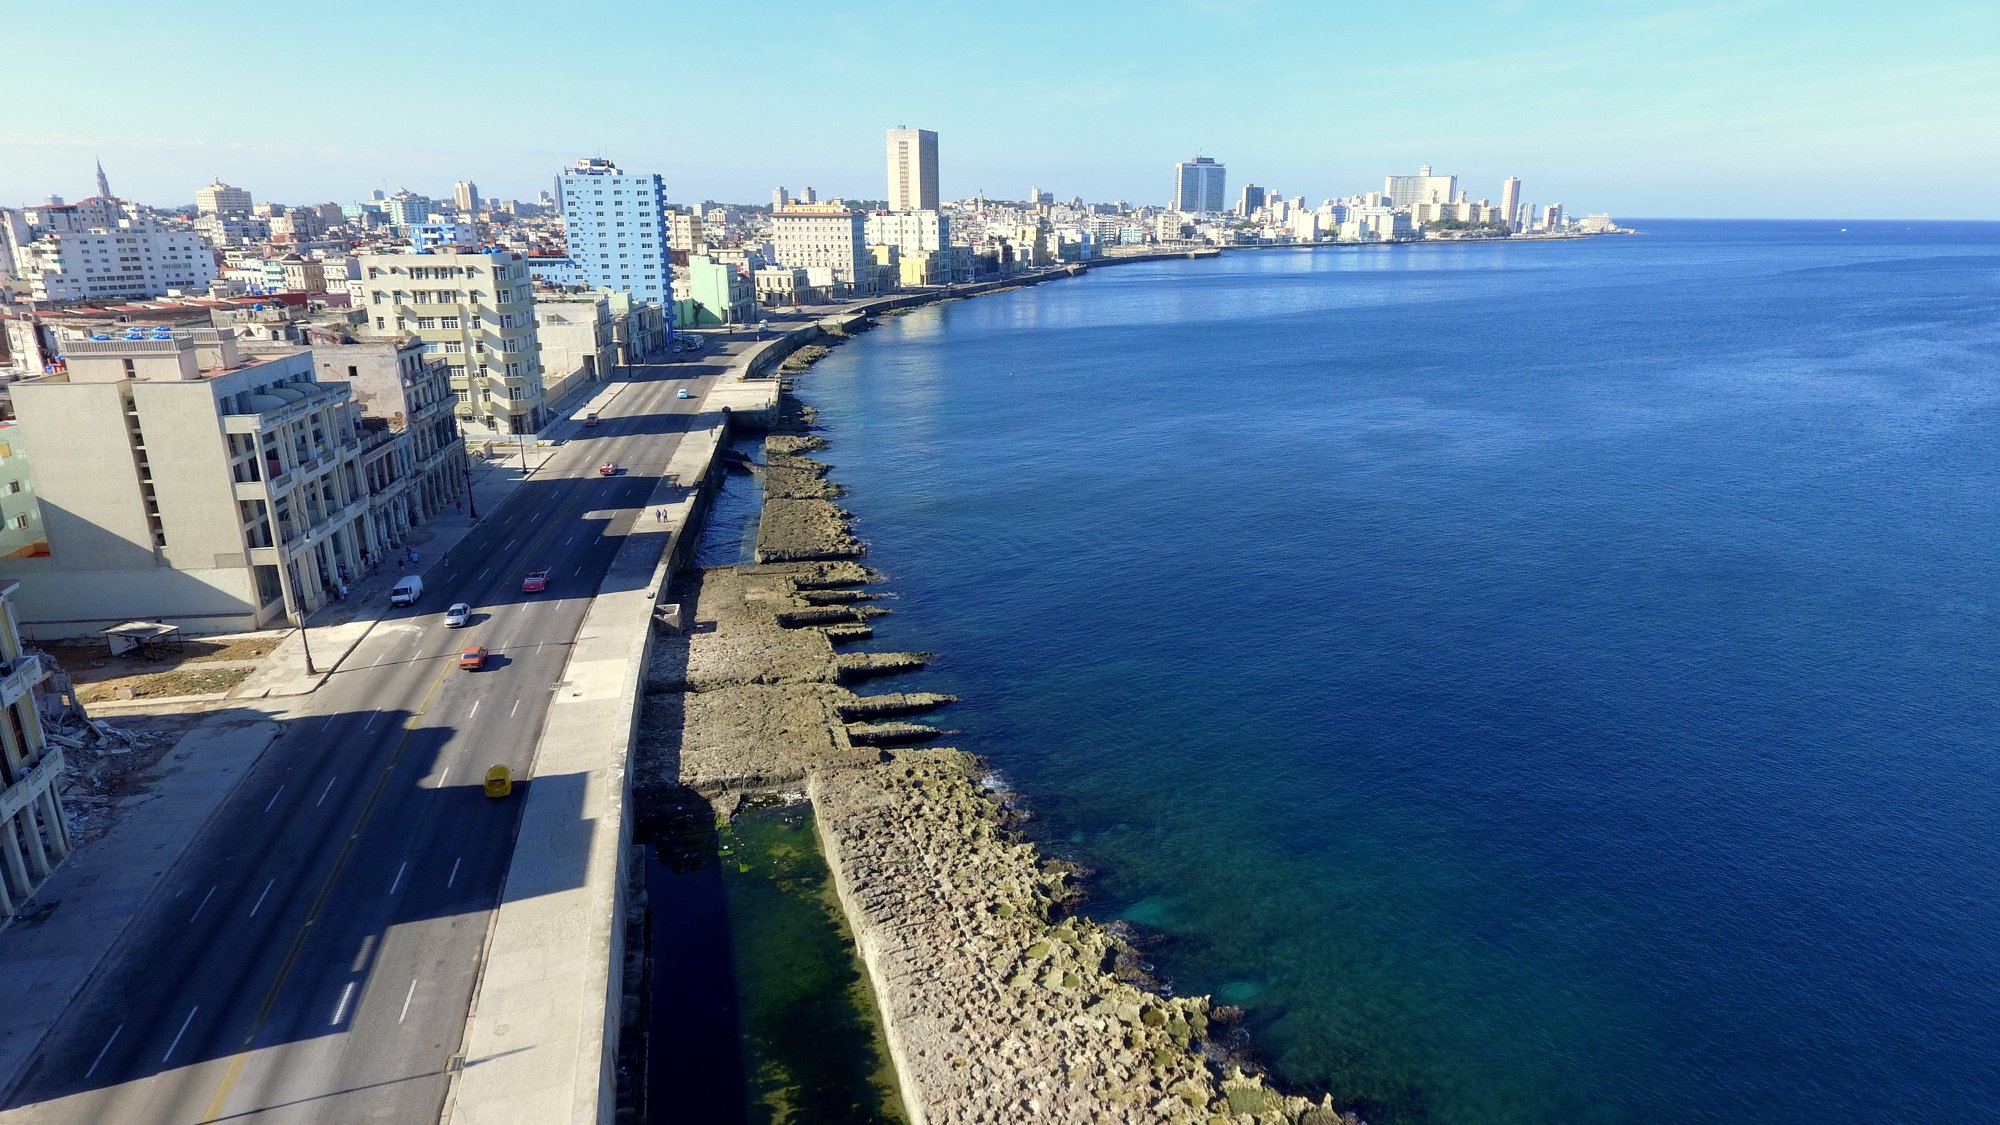 Malecón Cuba 2